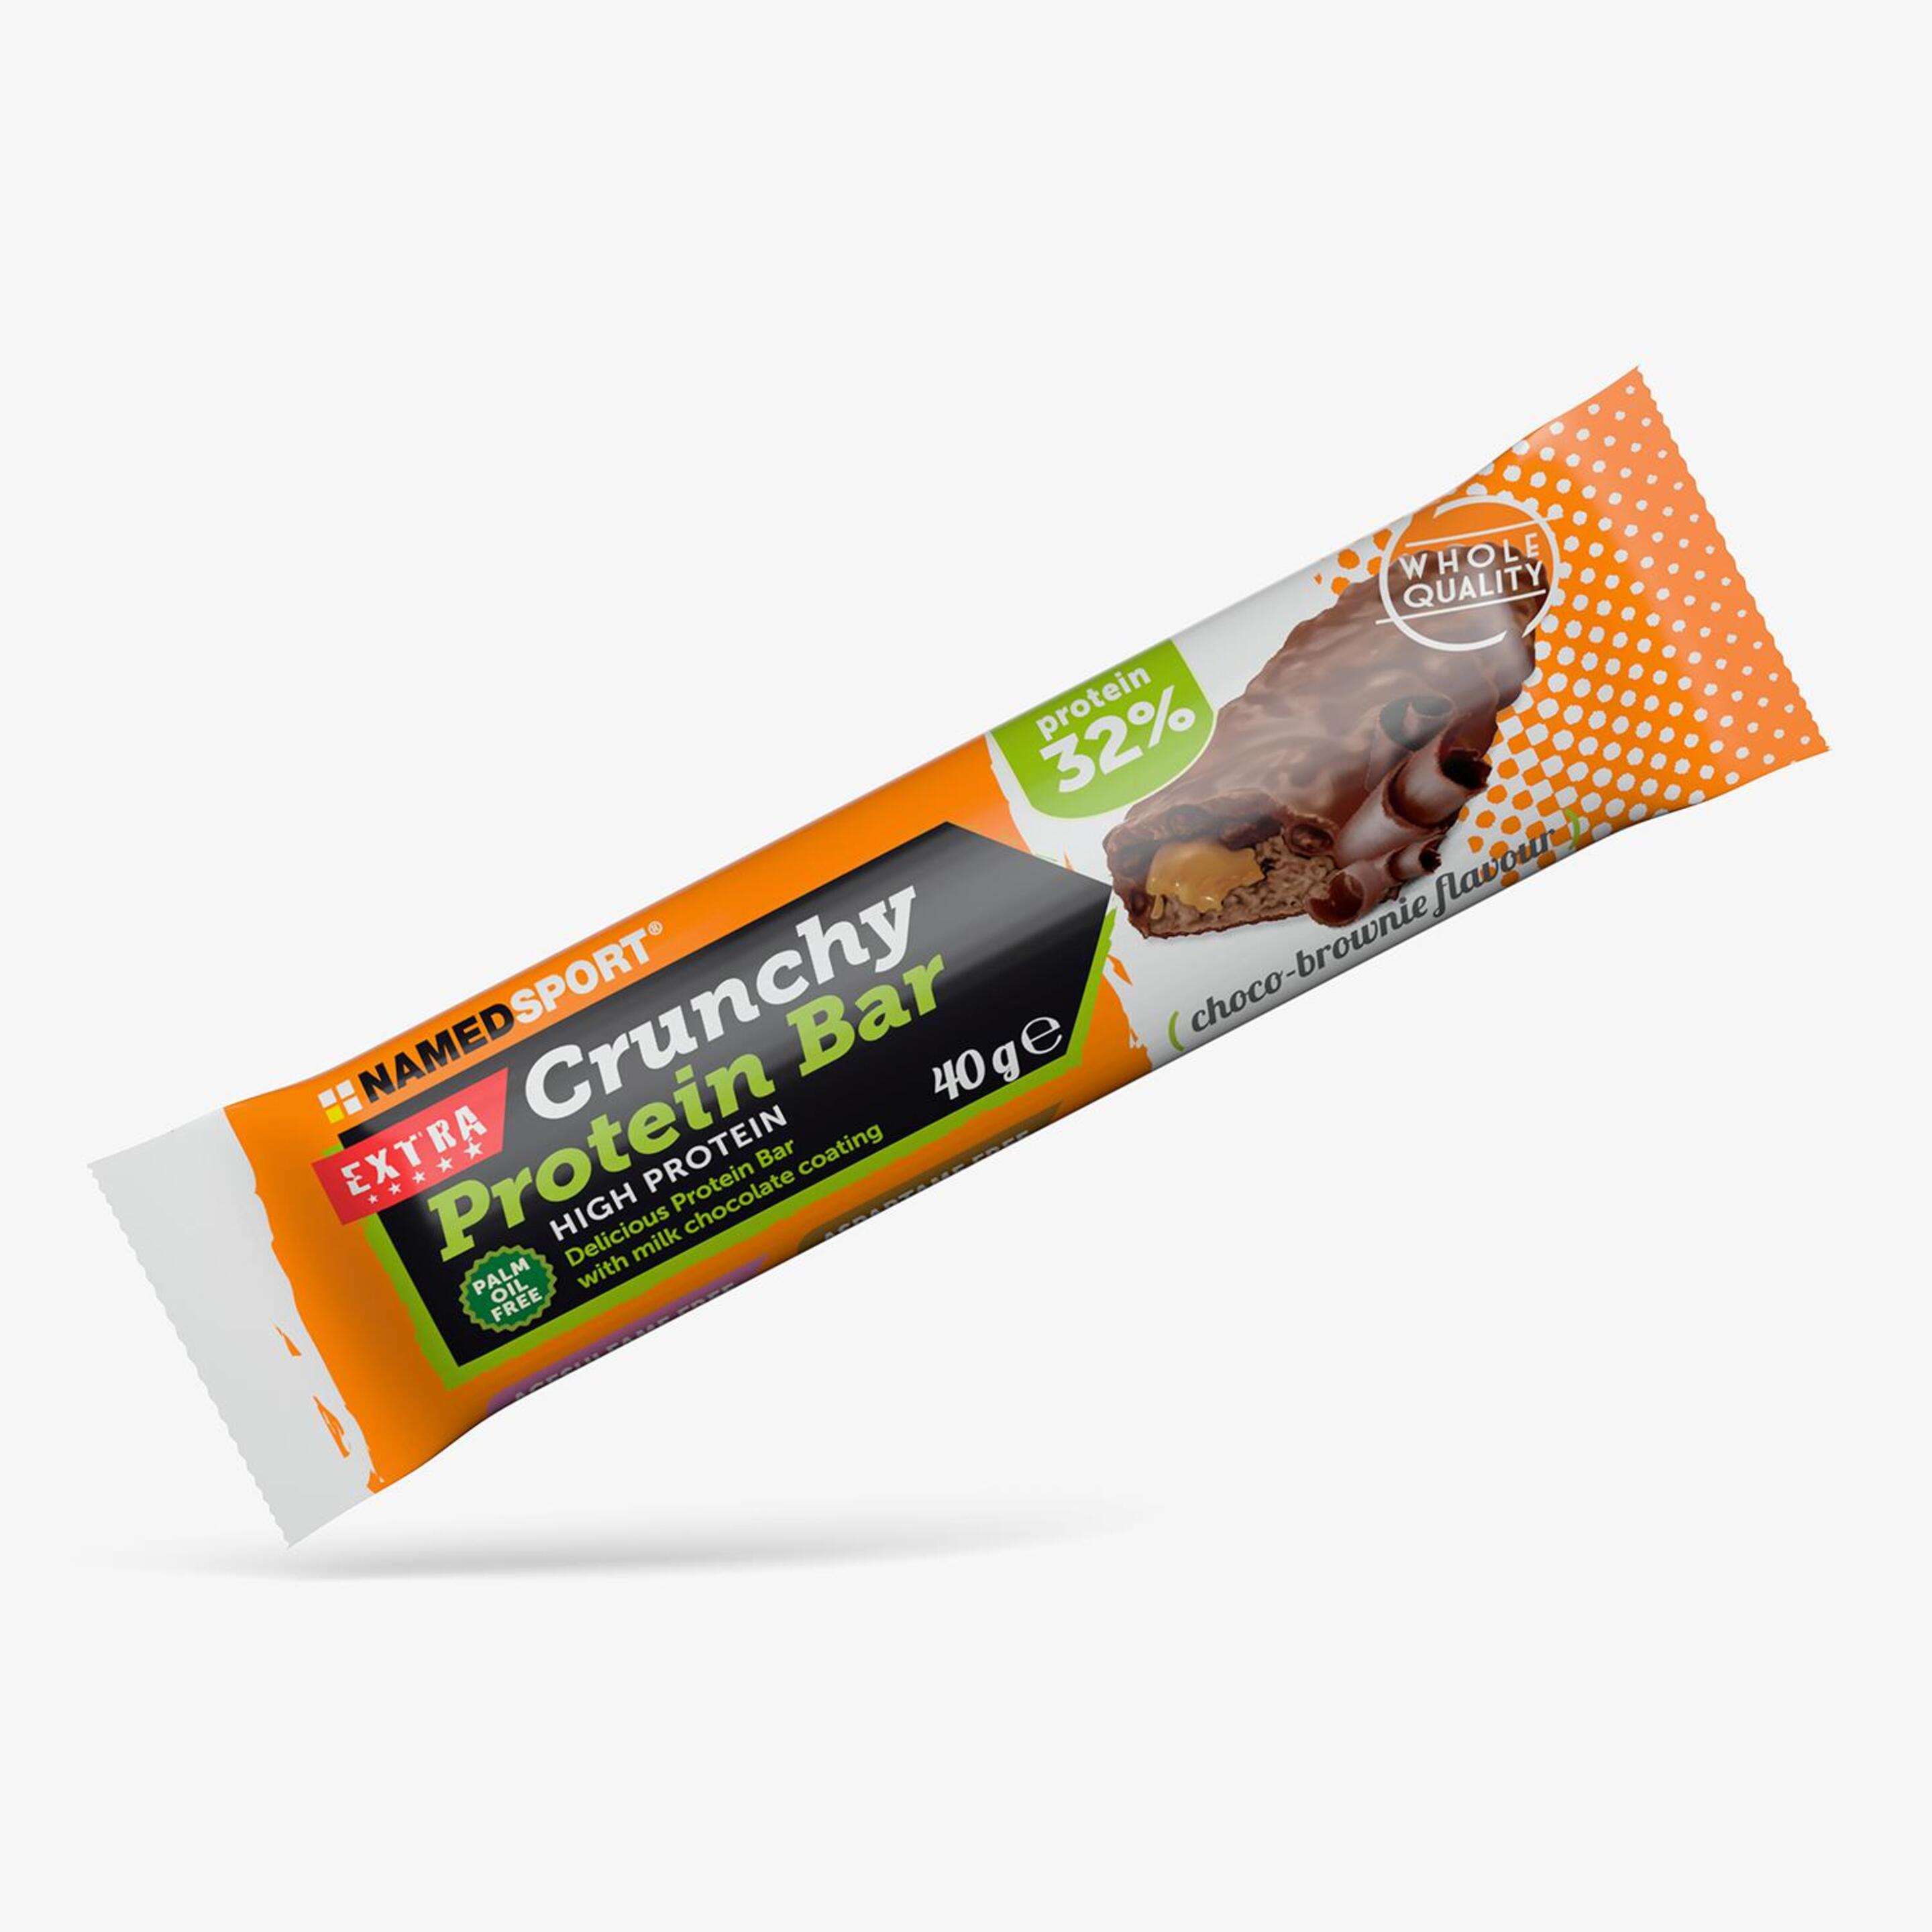 Namedsport Crunchy Choco Brownie - unico - Barrita Energética 40g